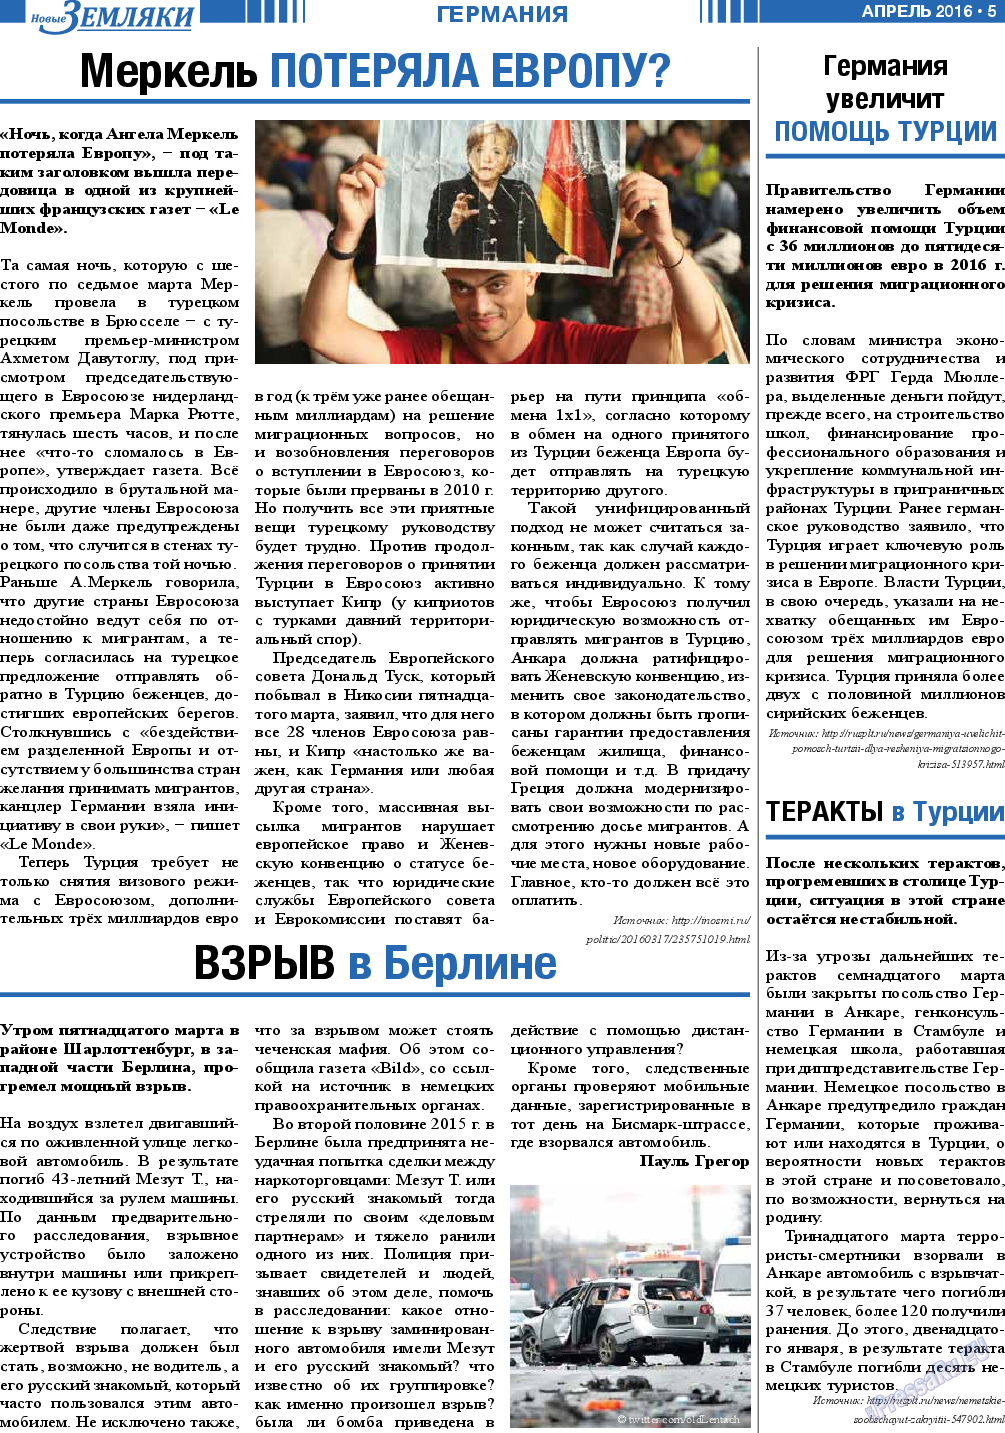 Новые Земляки, газета. 2016 №4 стр.5